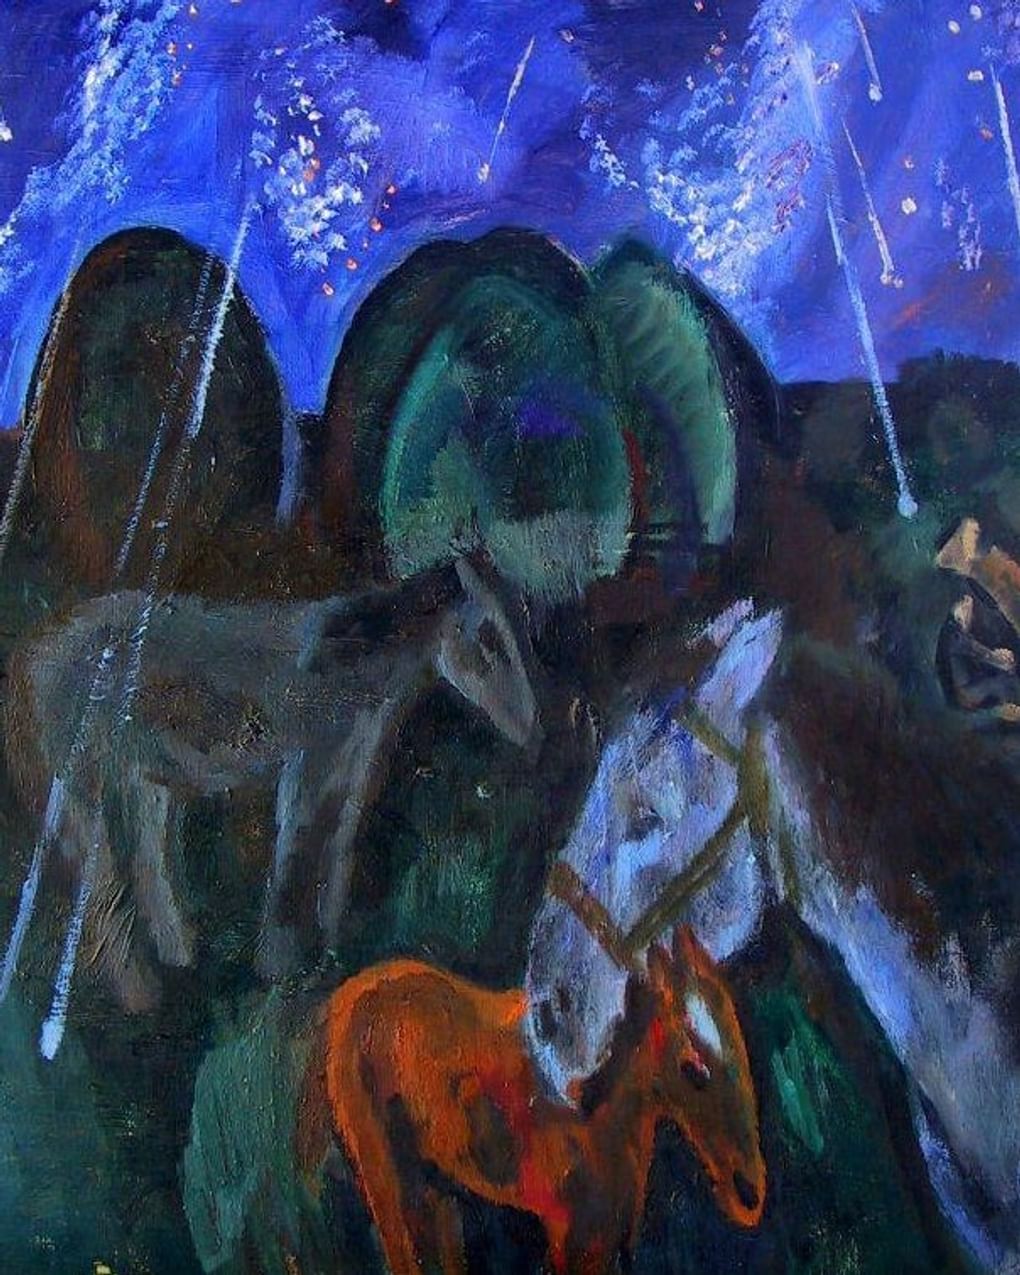 Виталий Тюленев. Звездопад (фрагмент). 1976. Астраханская государственная картинная галерея имени П.М. Догадина, Астрахань